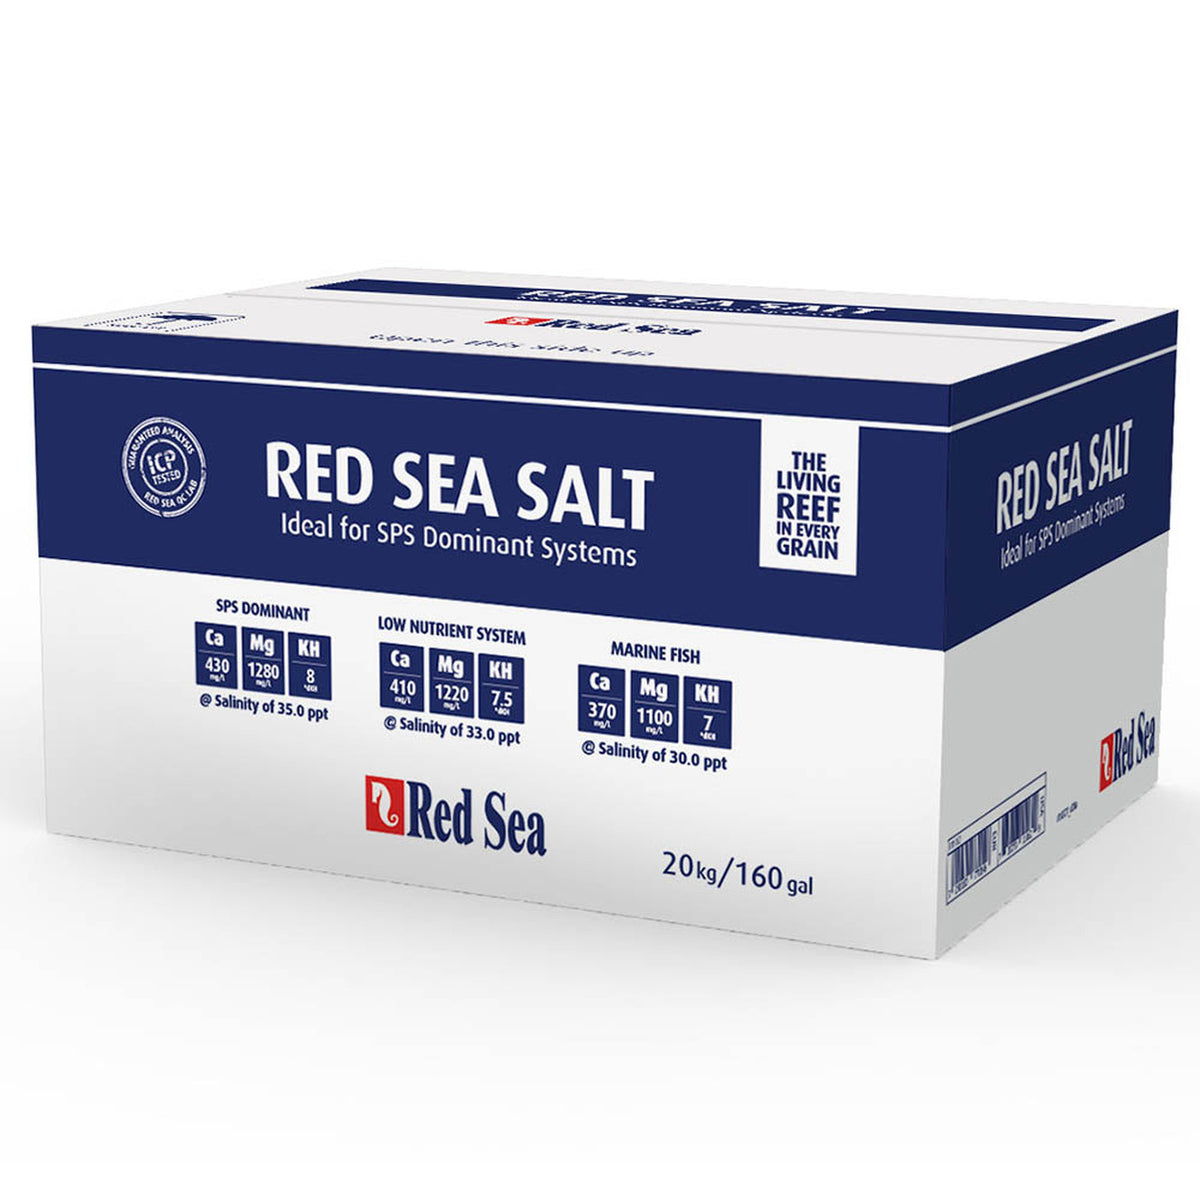 Red Sea Sea Salt 20kg Refill Box